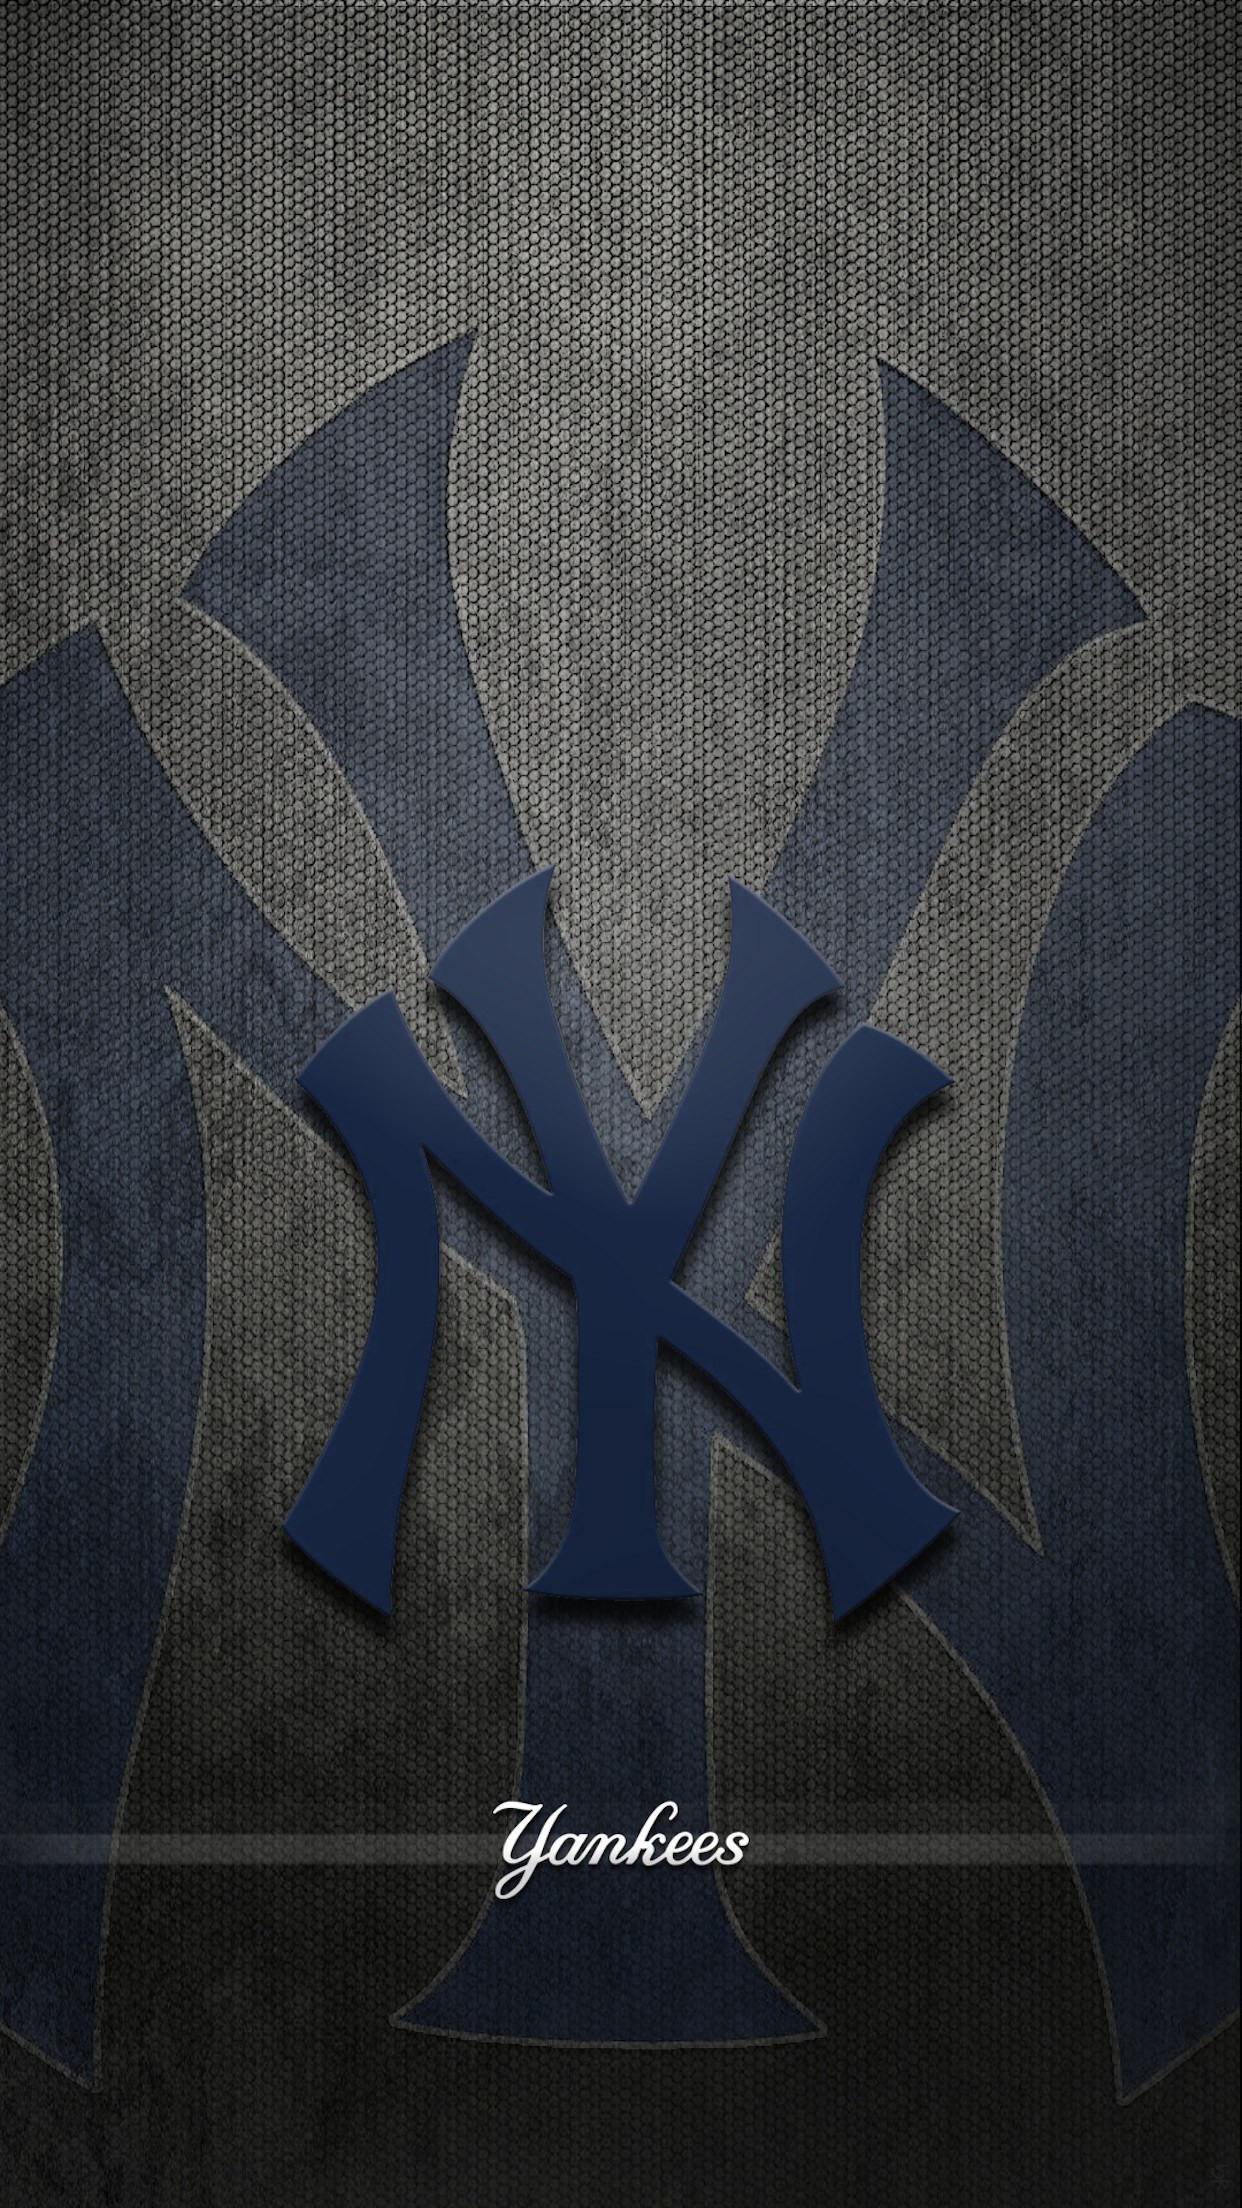 New York Yankees Wallpaper (61+ images)